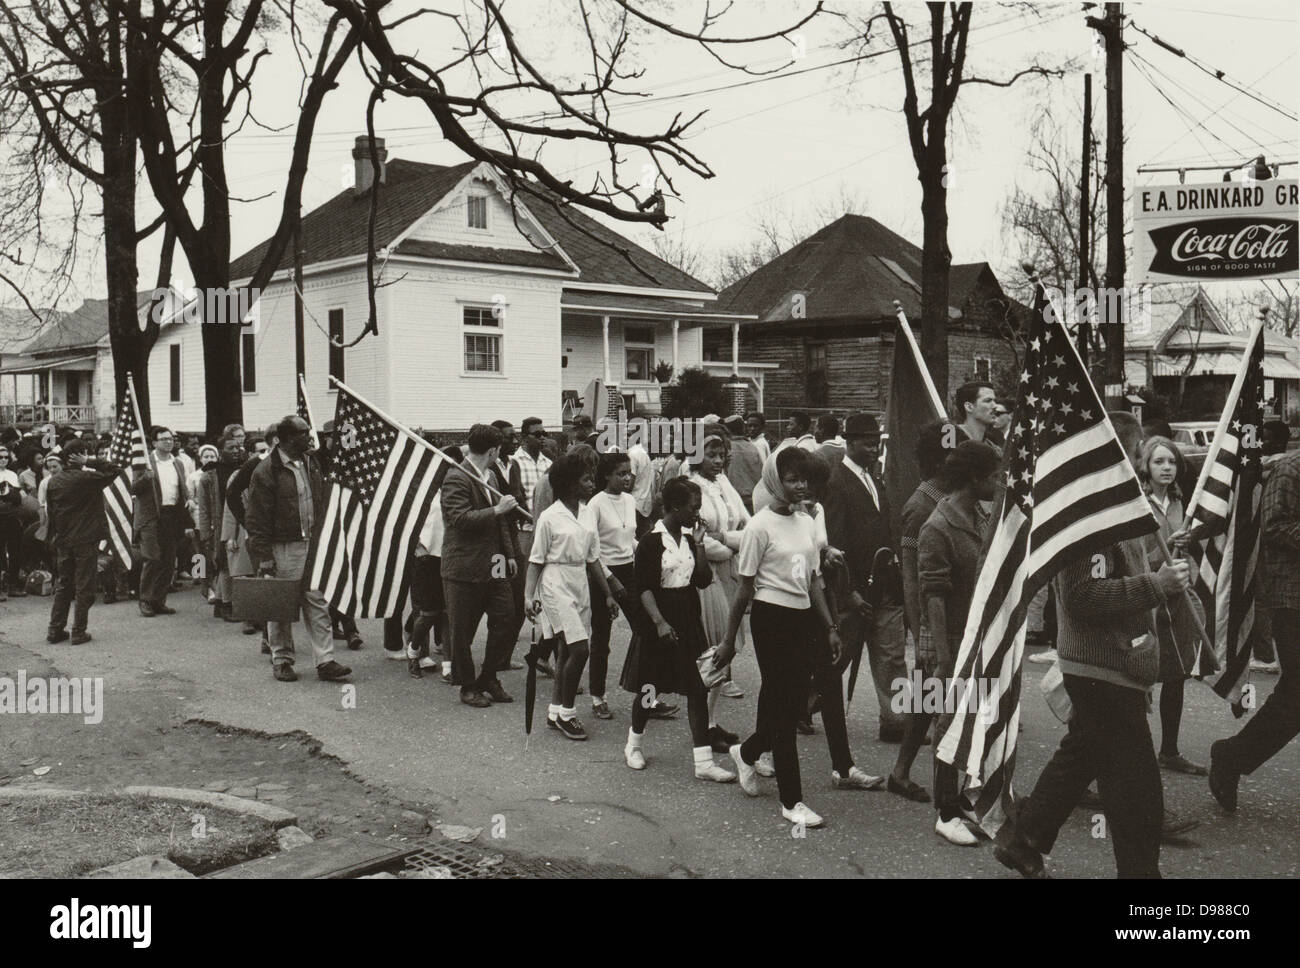 Teilnehmer, einige, die amerikanische Fahnen, marschieren in der zivilen Strumpfhosen März von Selma nach Montgomery, Alabama, USA, 1965. Fotograf: Peter Pettus. Stockfoto